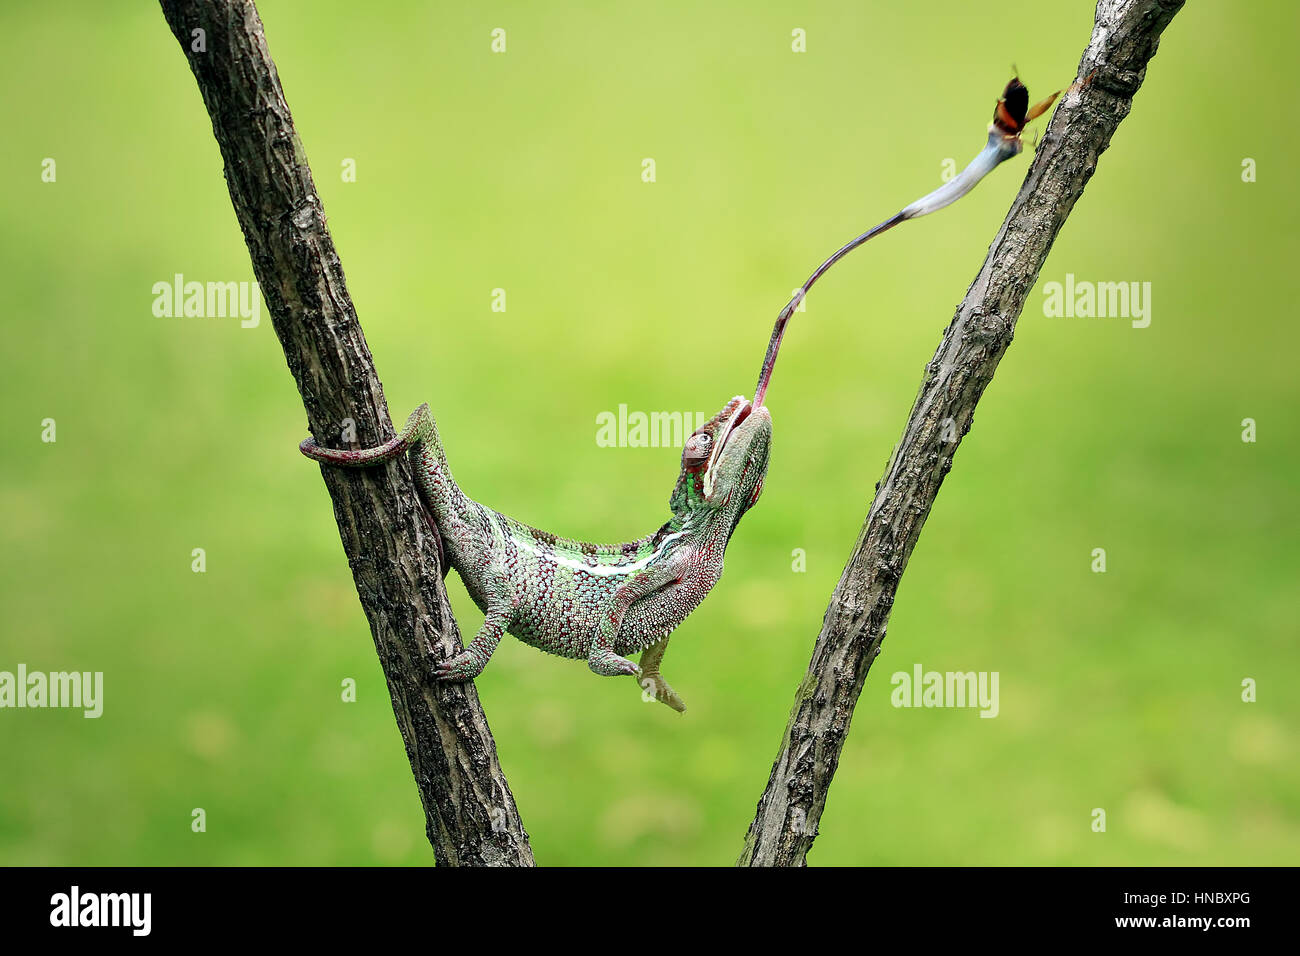 Alimentation caméléon sur un insecte, Indonésie Banque D'Images